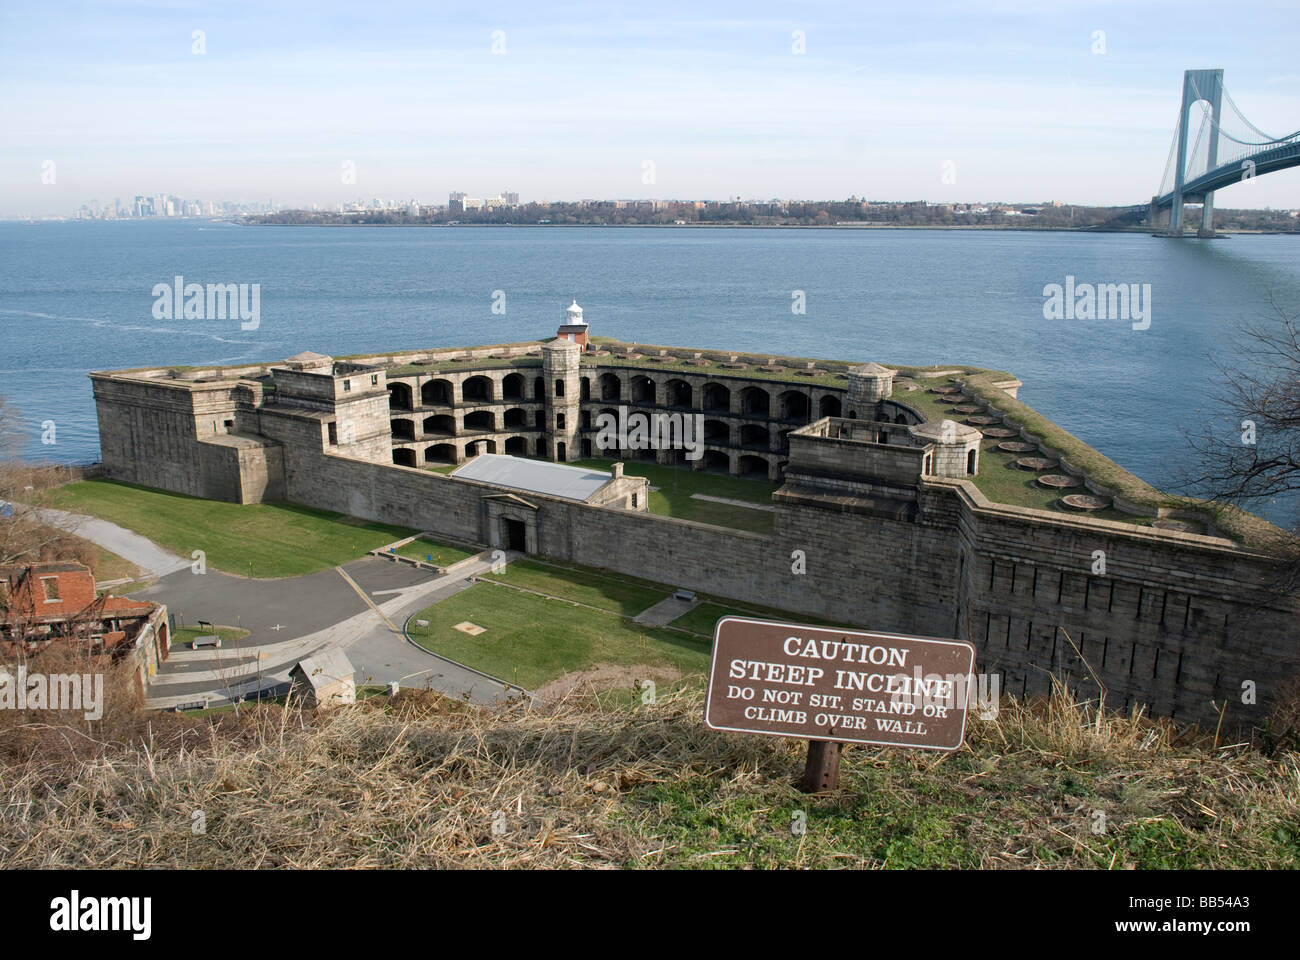 Festung Festung altes steinernes Verrazano verengt horizontale Ozean Hafen Verteidigung Klippe Punkt Horizont Ansicht Luftbild übersehen Stockfoto